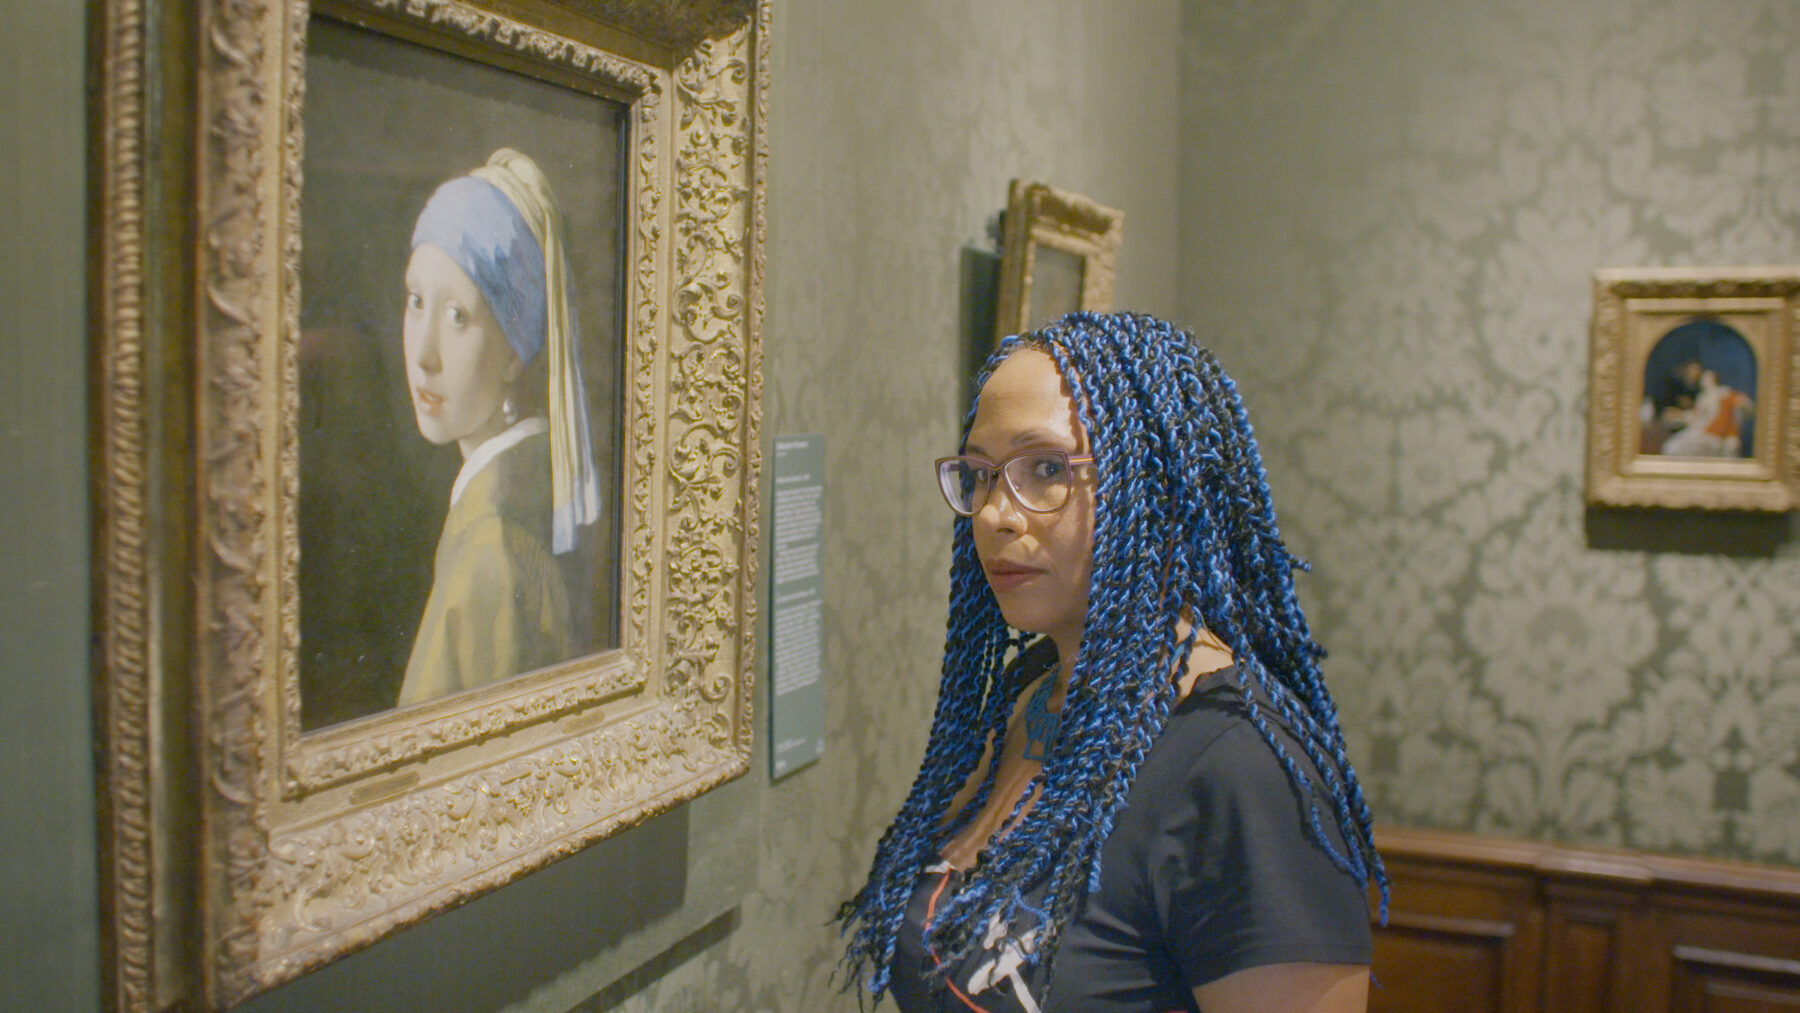 Kadr z muzeum, młoda kobieta oglądająca obraz Vermeera.